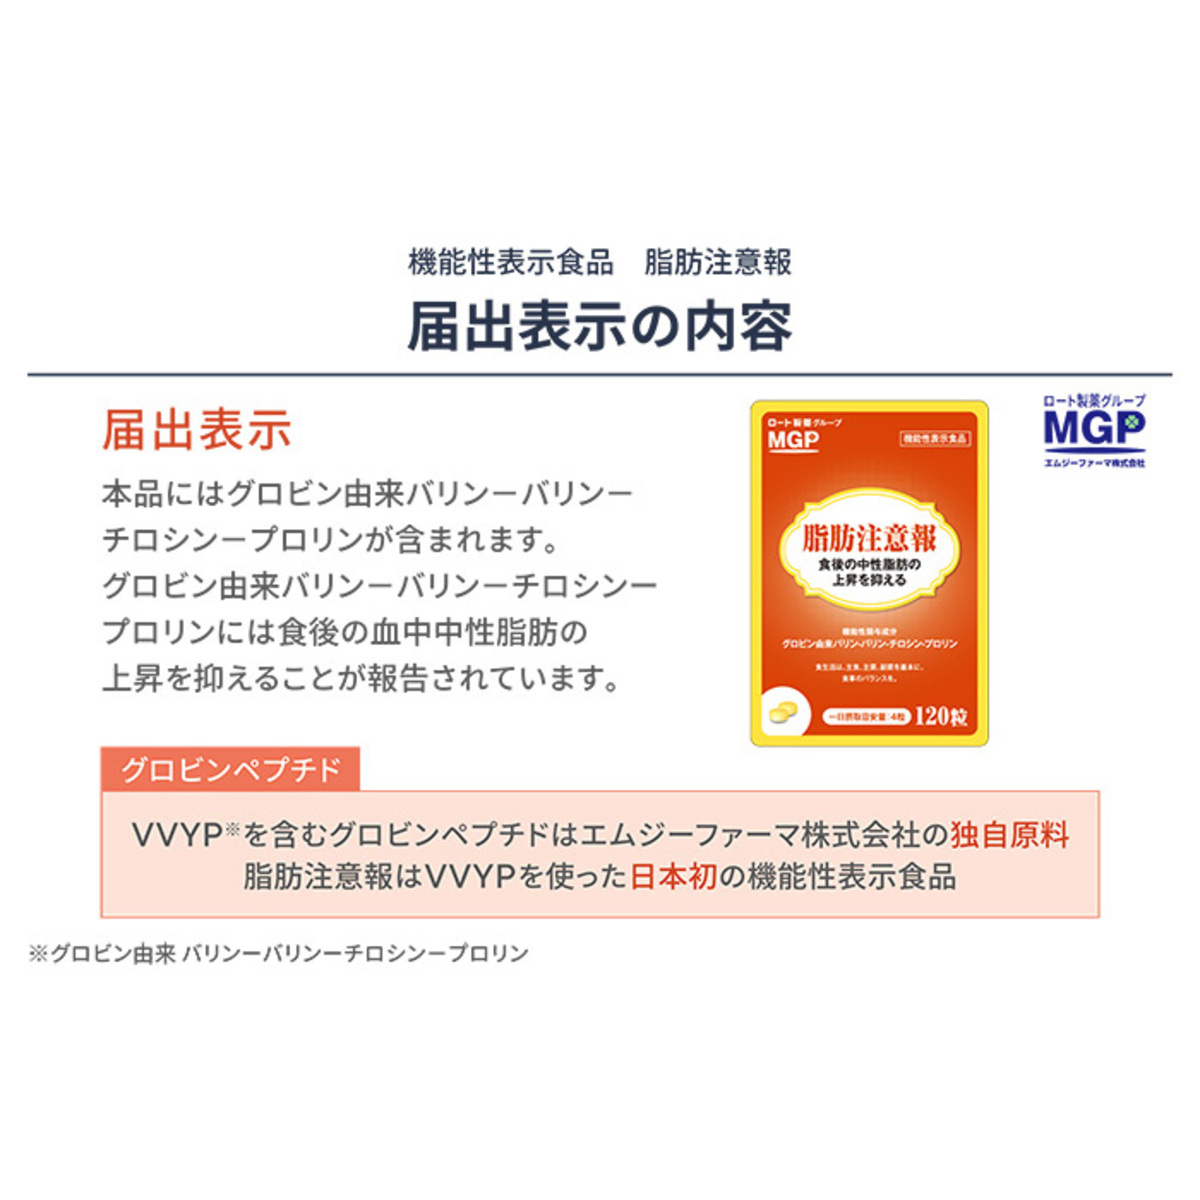 機能性表示食品 脂肪注意報 2袋セット - QVC.jp